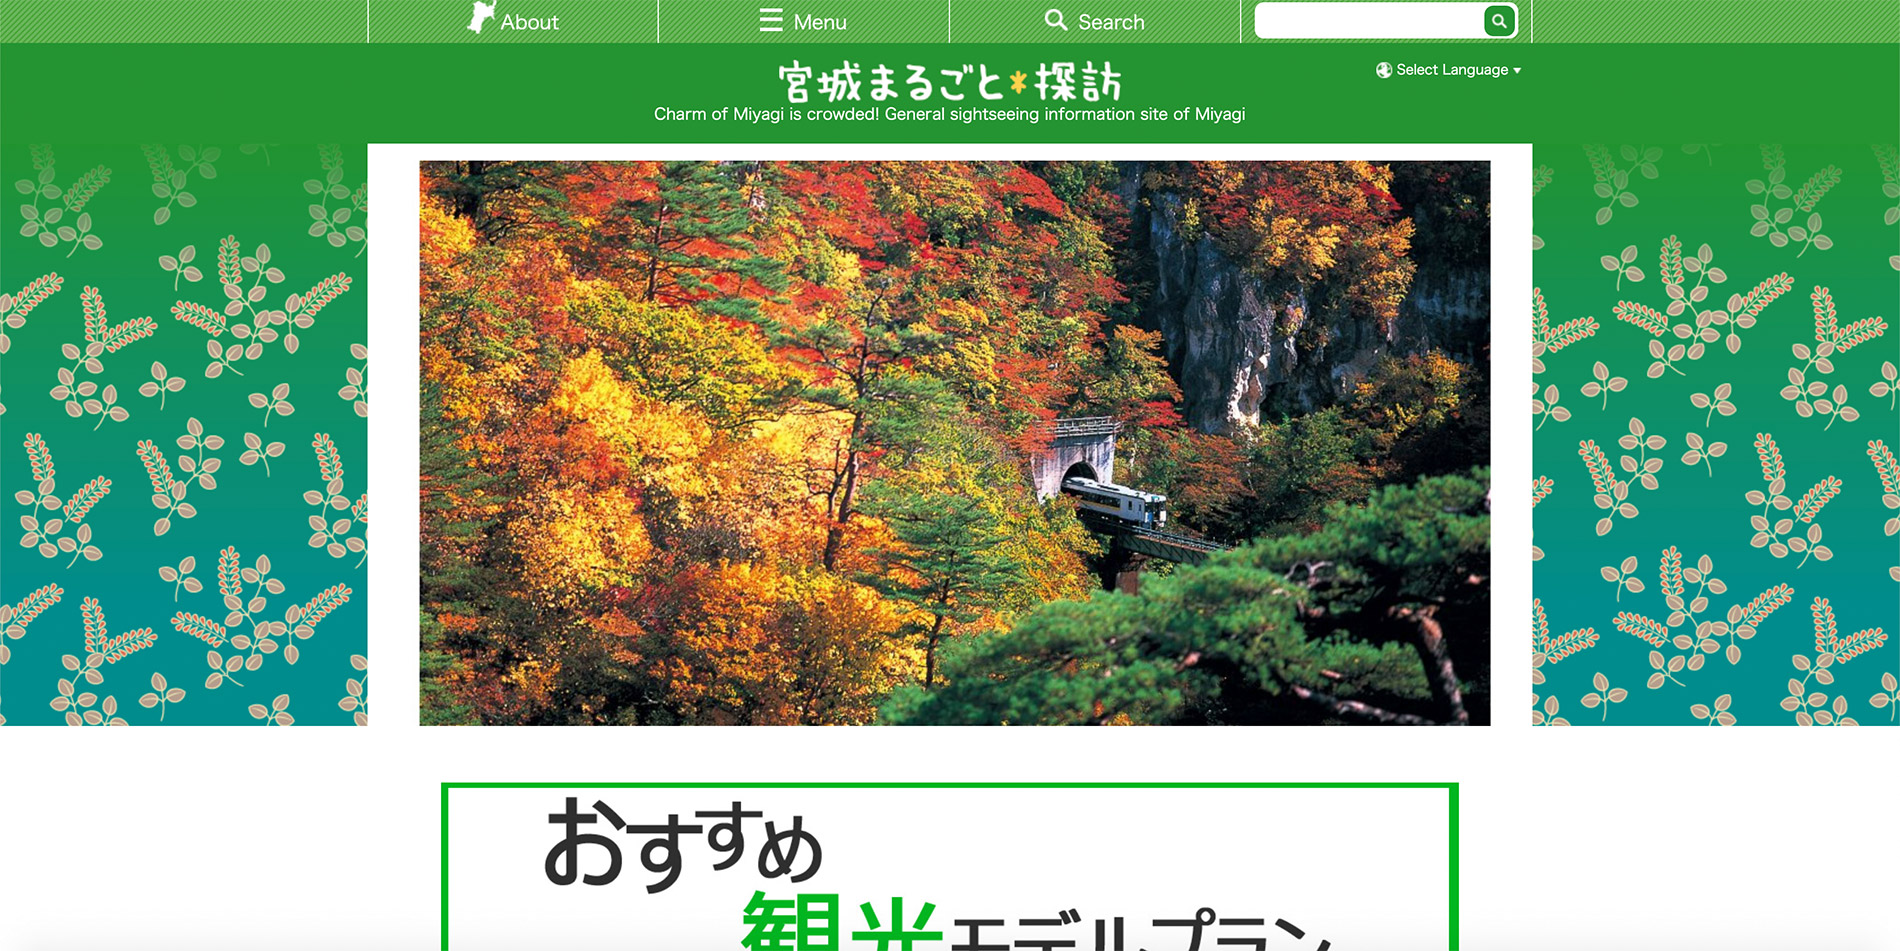 Die englische Webseite des Tourismusverbandes der Präfektur Miyagi.